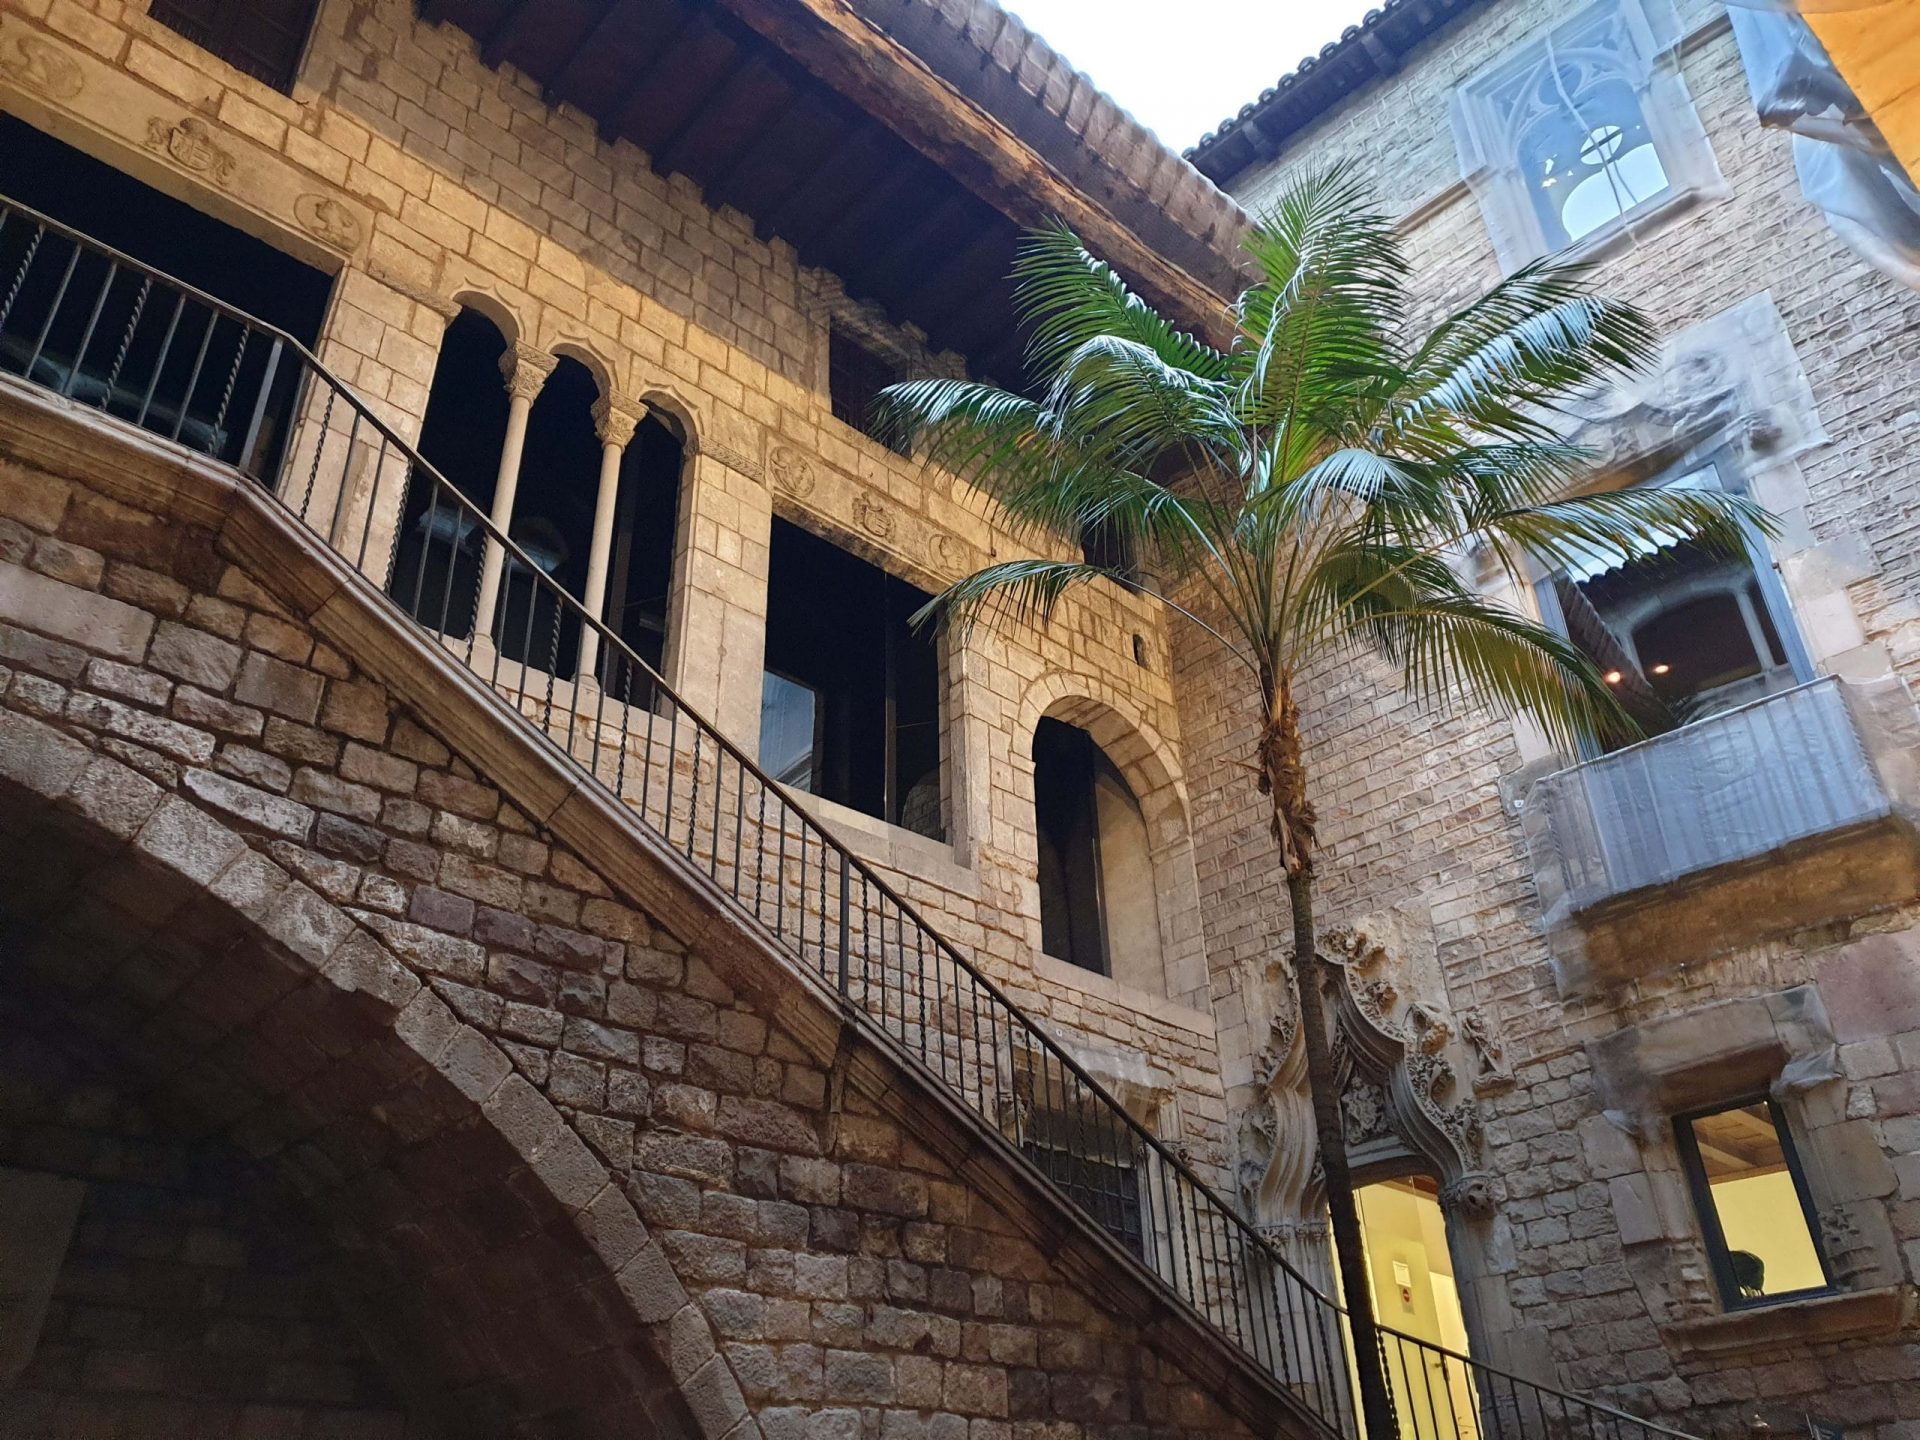 L'ingresso al museo Picasso in un palazzo medievale di Barcellona.